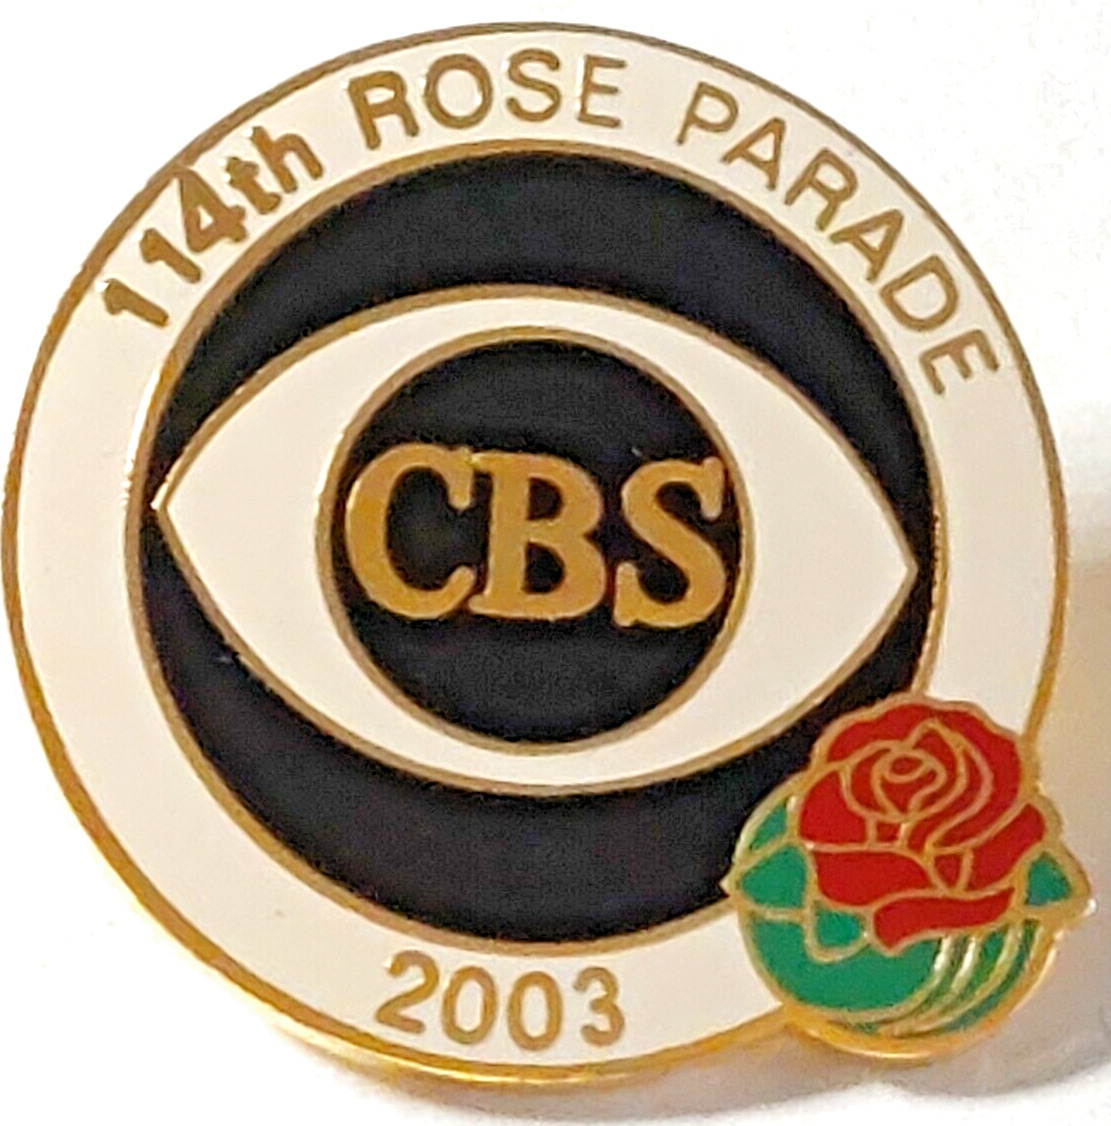 Rose Parade 2003 CBS 114th Rose Parade Lapel Pin (072923)